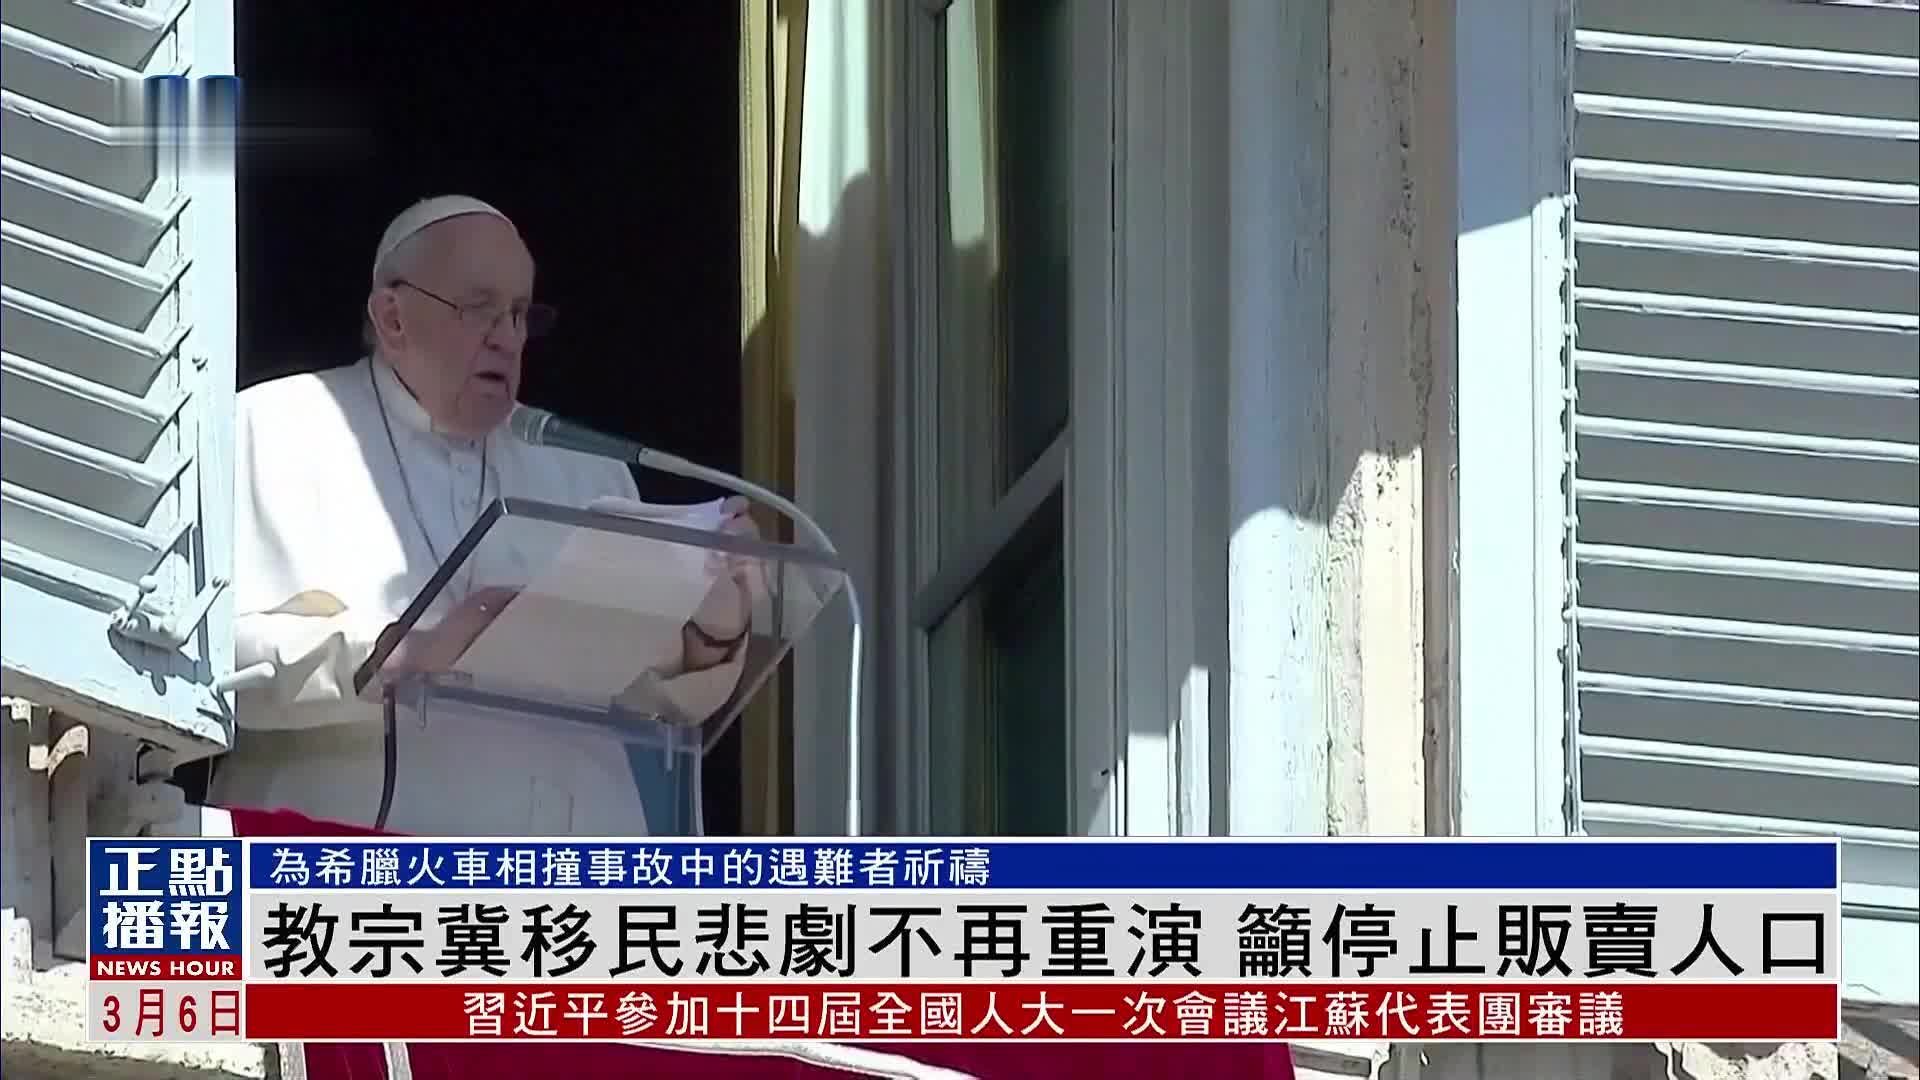 罗马天主教教宗冀移民悲剧不再重演 呼吁停止贩卖人口